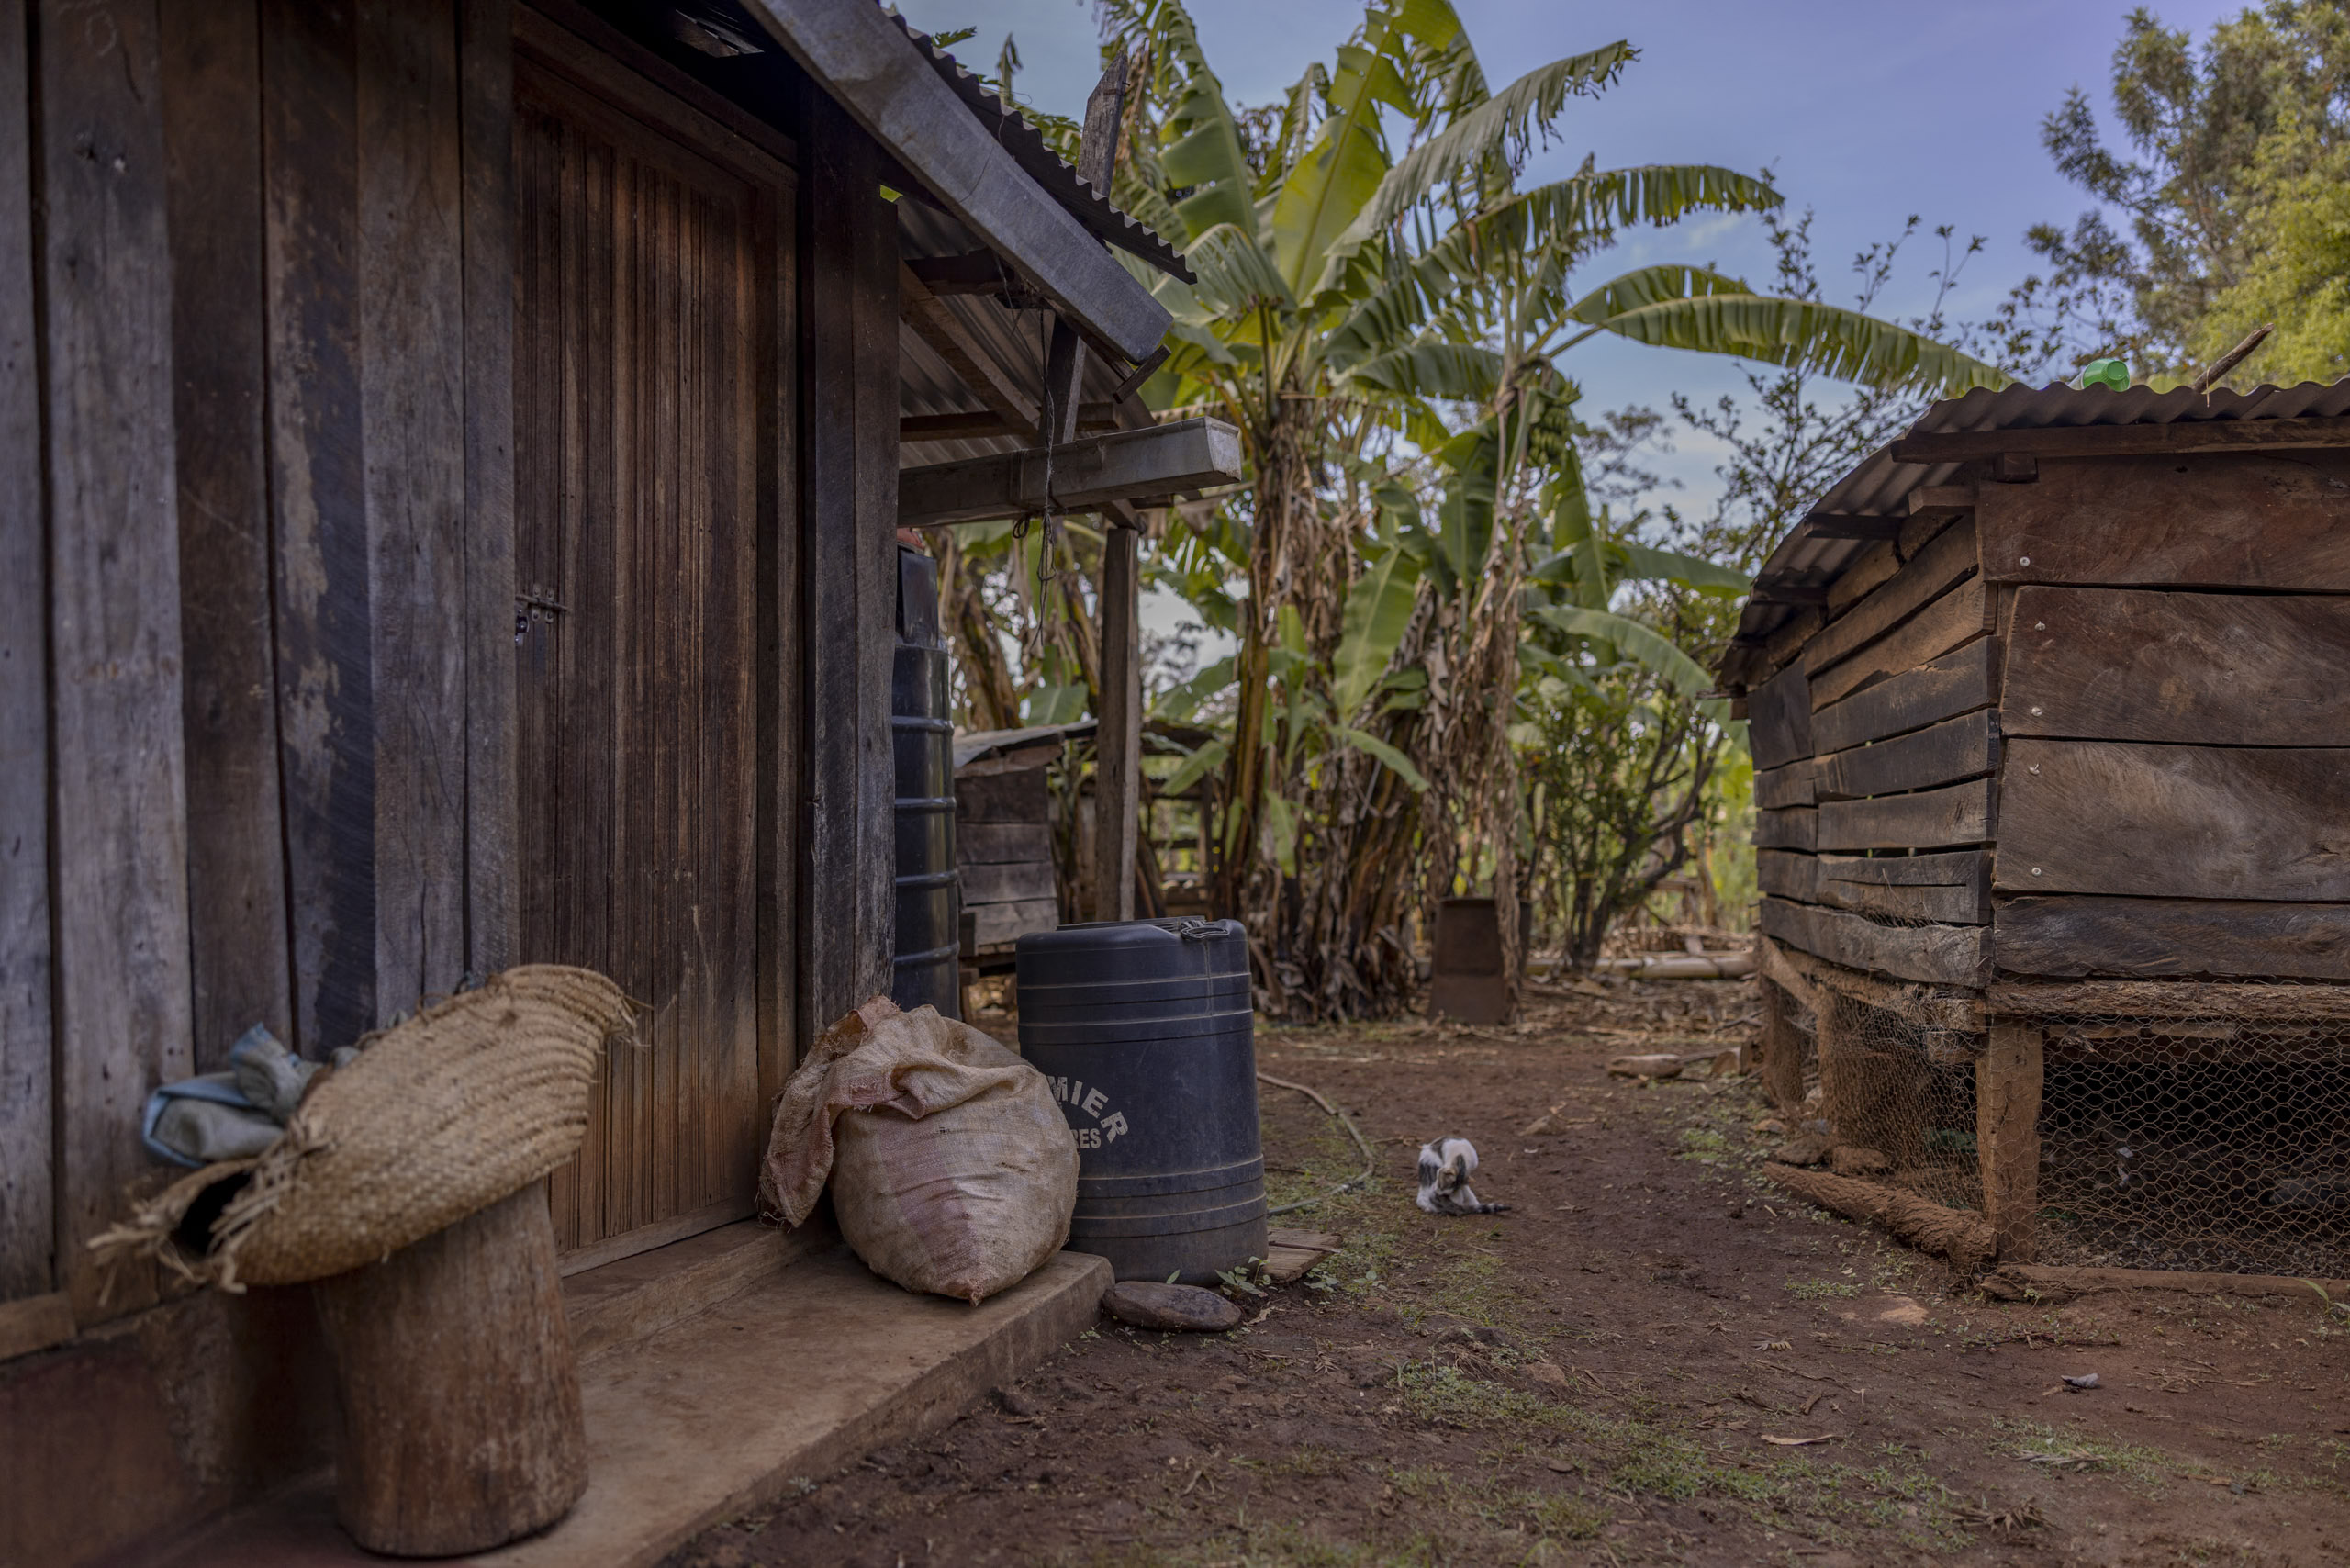 Rustikales Holzhaus und Lagerschuppen in ländlicher Umgebung mit einem blauen Fass, geflochtenen Körben und Säcken am Eingang, umgeben von Bananenbäumen. © Fotografie Tomas Rodriguez